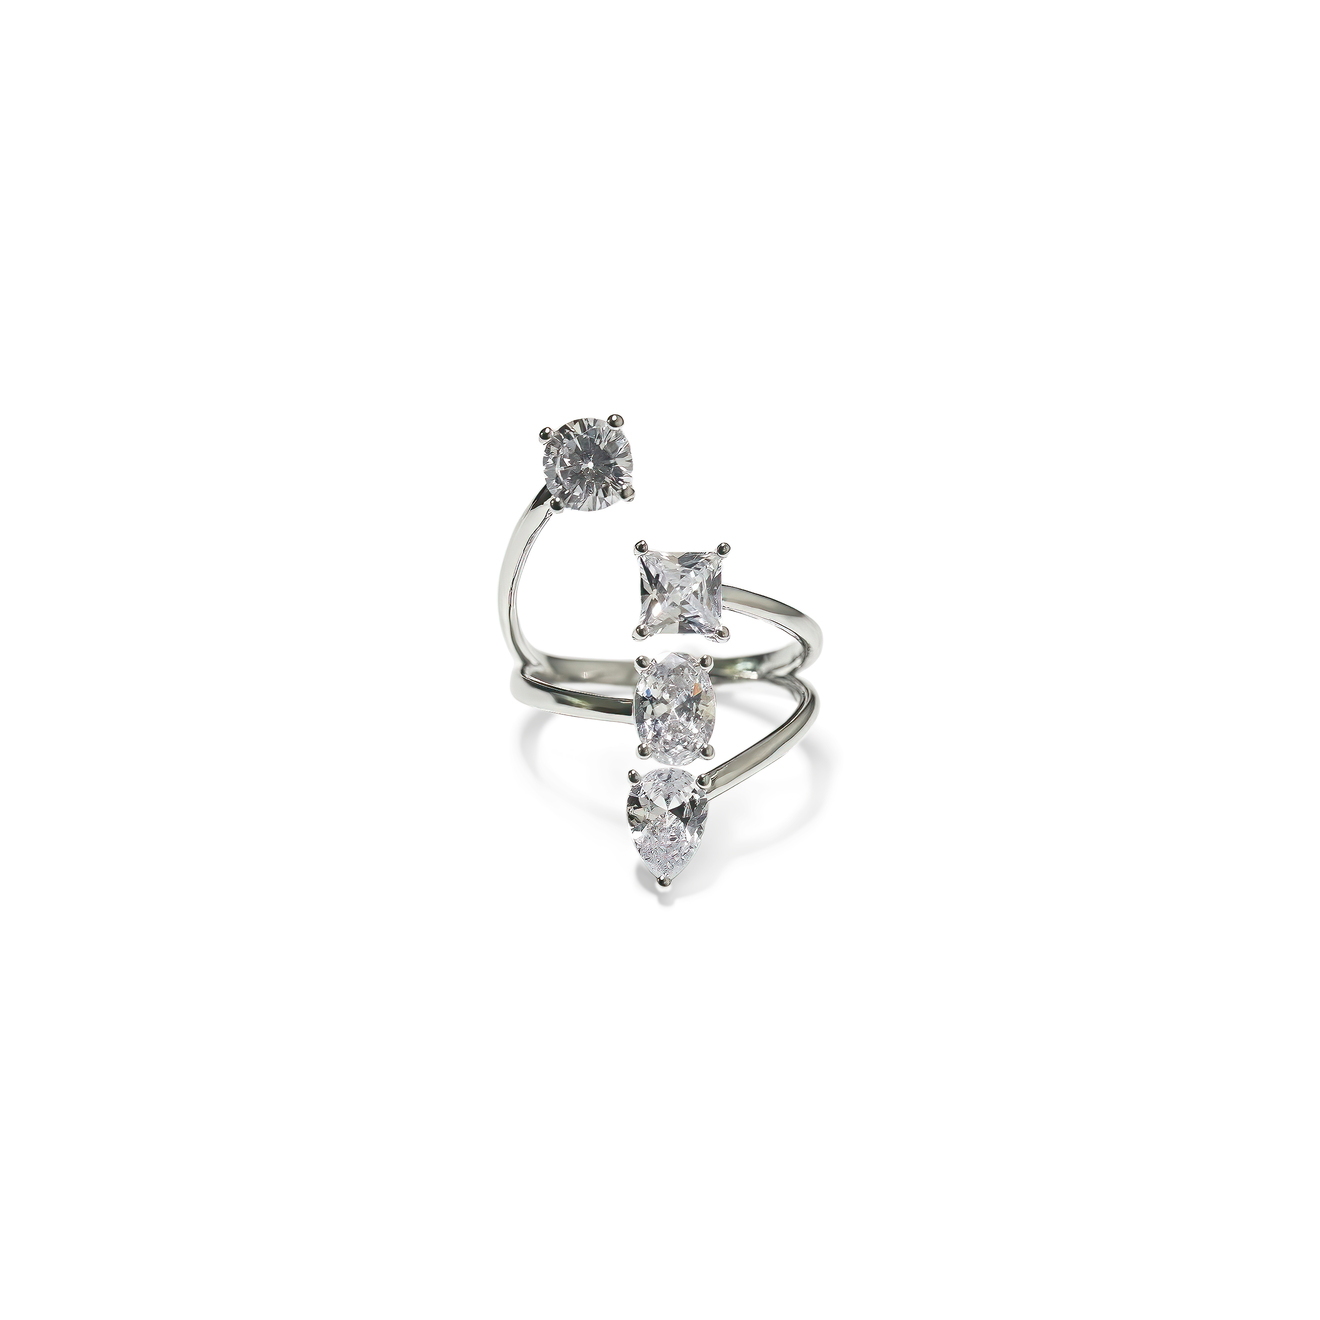 Free Form Jewelry Кольцо серебристое с 4 разноуровневыми кристаллами free form jewelry серебристое двойное кольцо с бантиком и кристаллами